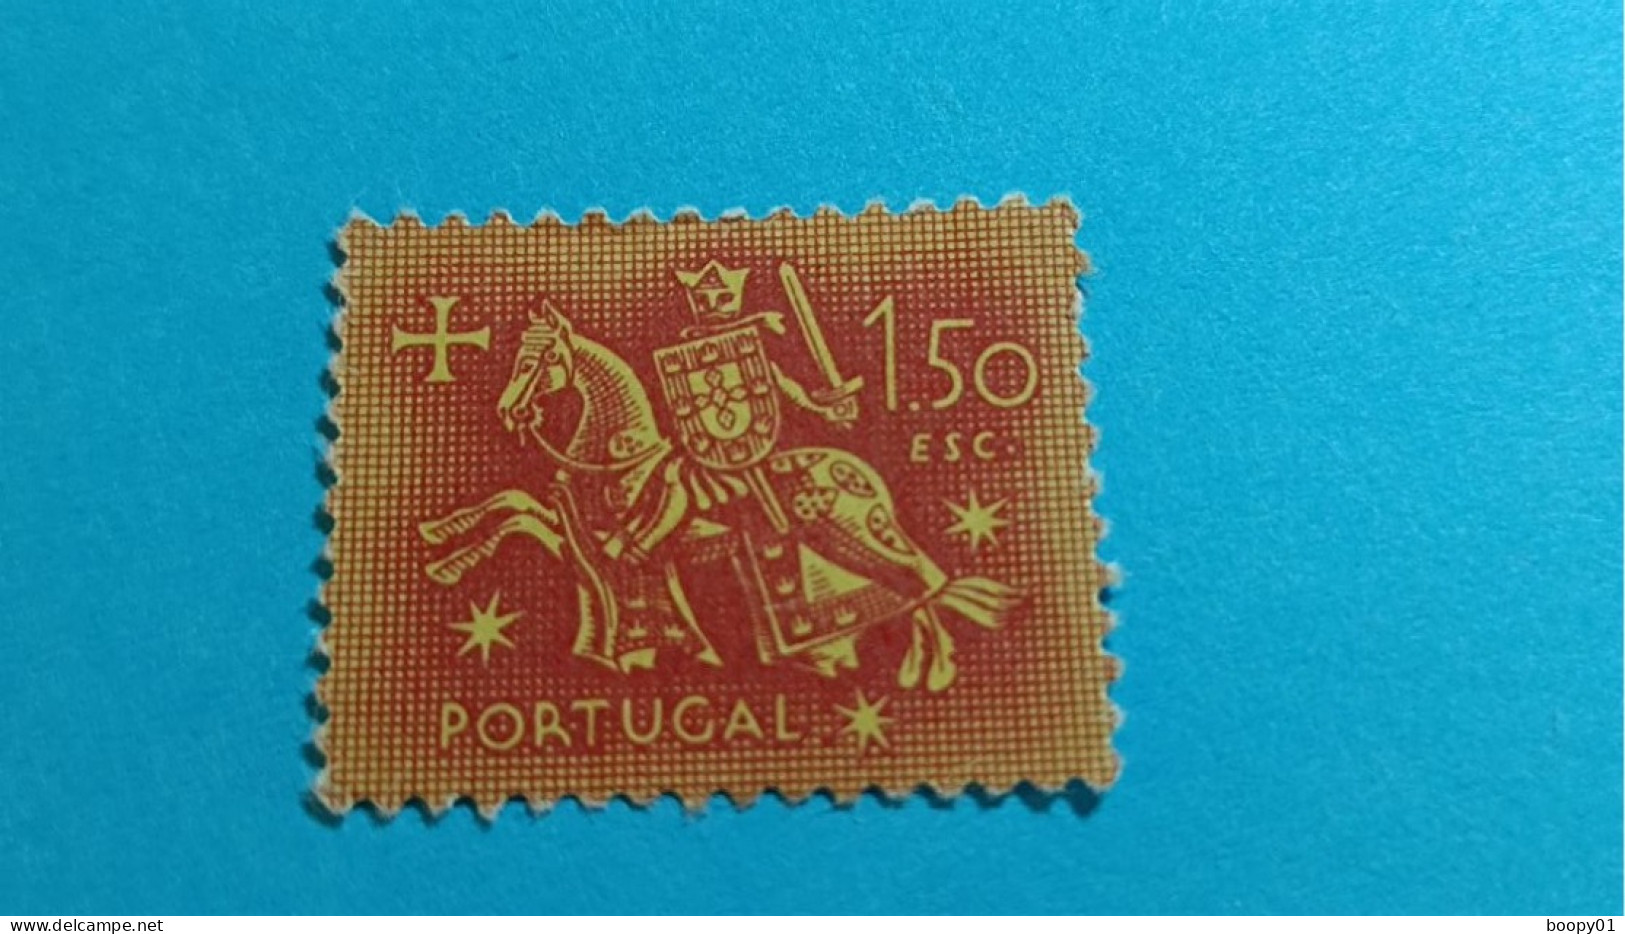 PORTUGAL - Timbre 1953 : Sceau équestre De Denis 1er De Portugal (Dinis Ou Diniz) - 1.50 Escudo - Ungebraucht